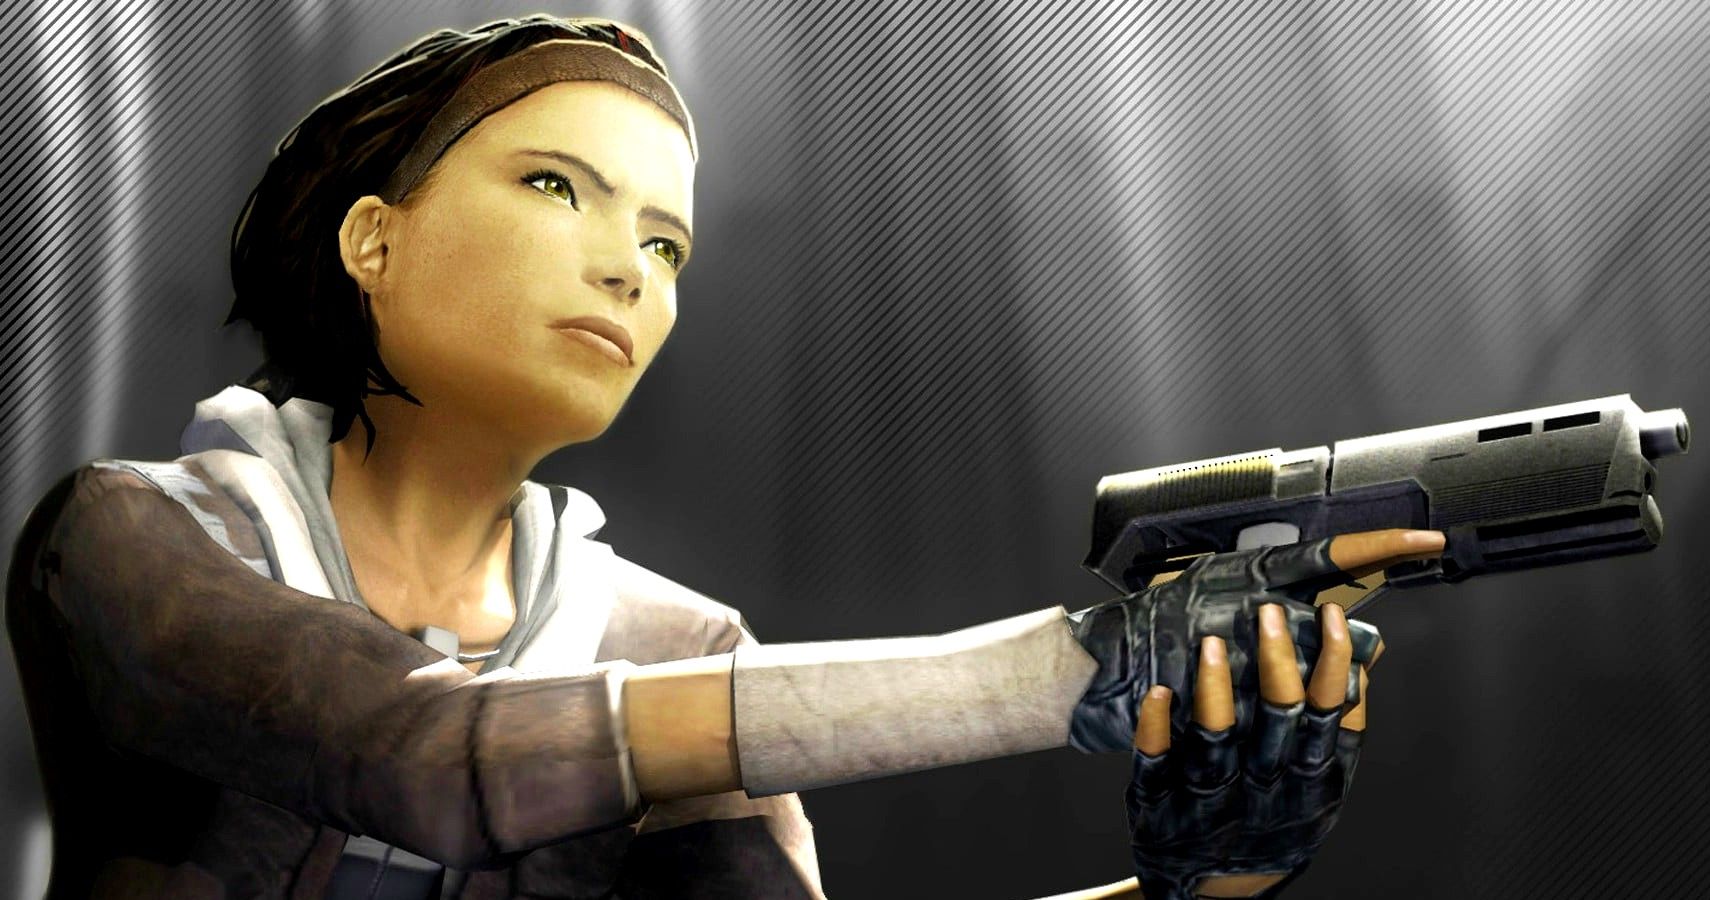 EchoSmoker — The Alyx Vance Half-Life 2: Episode 1, captured